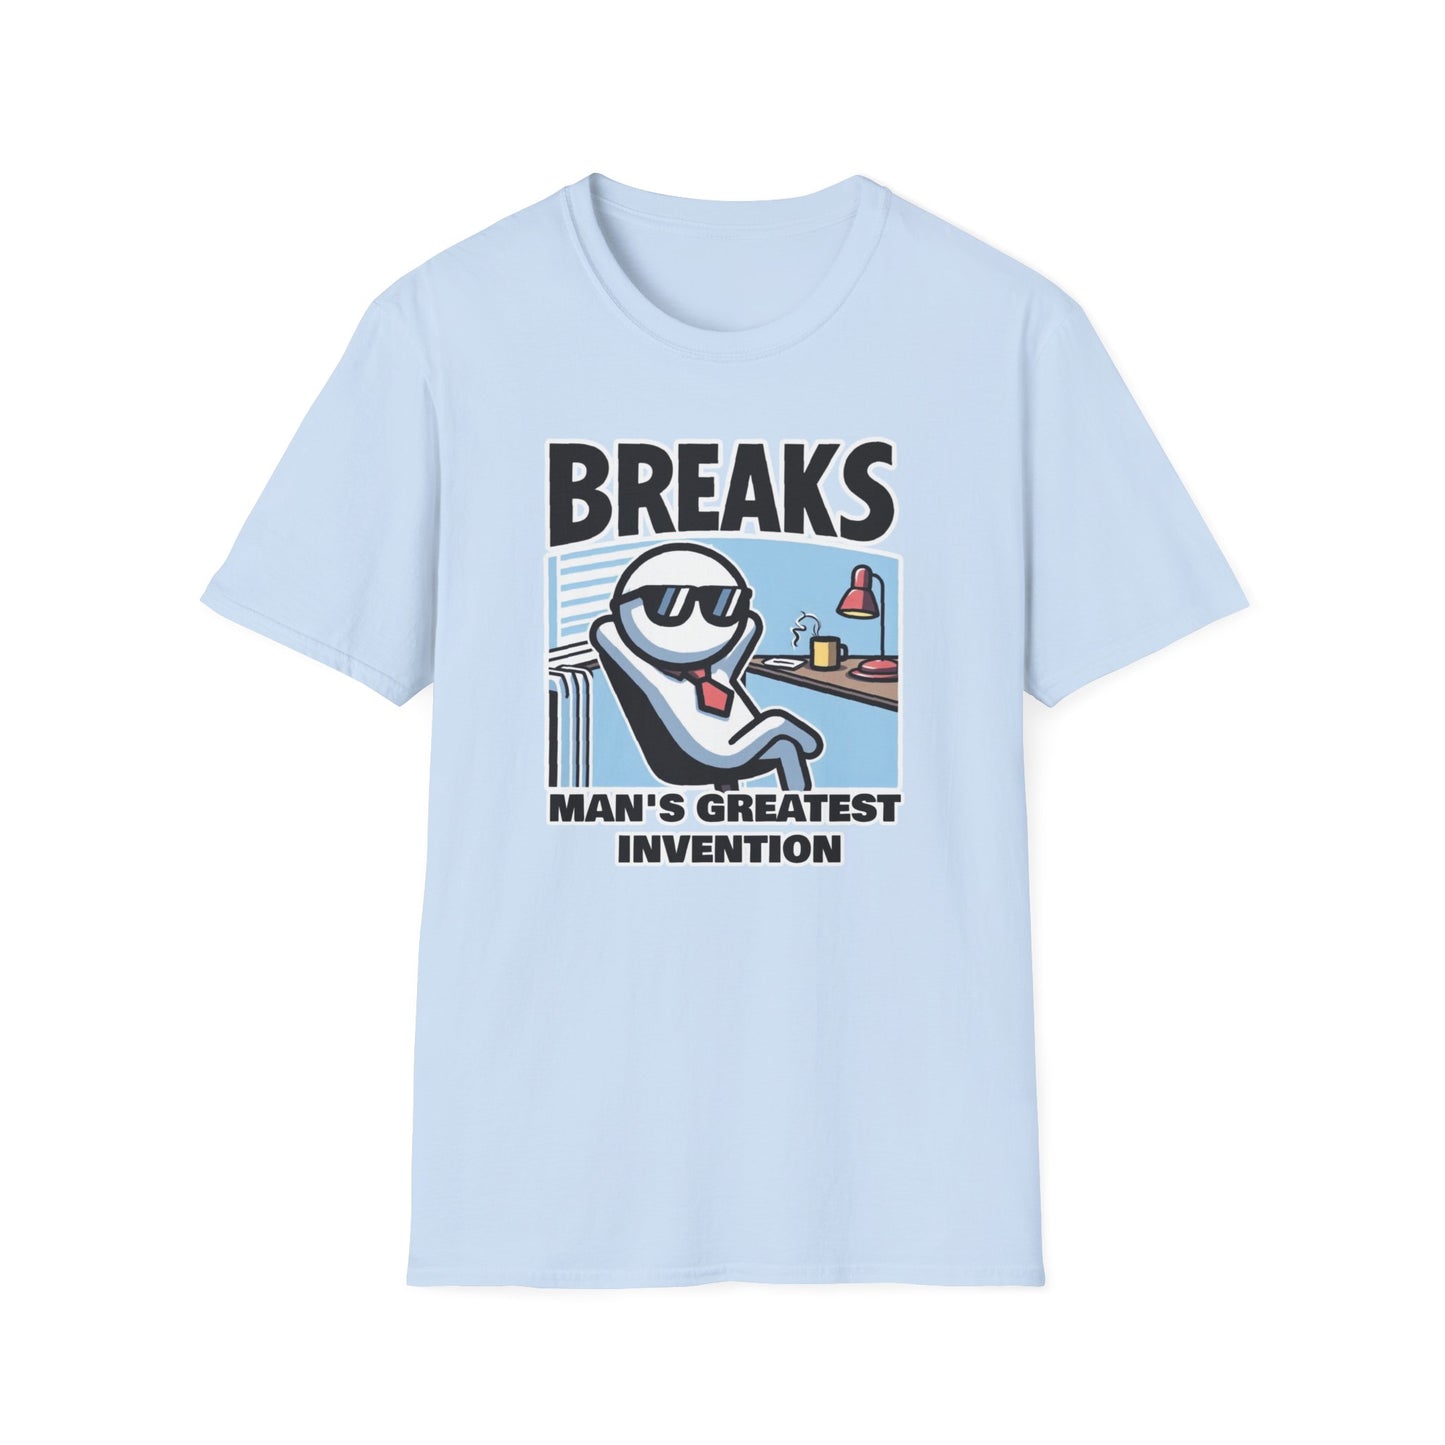 Break Time Bandit: Best Moments Happen on break...Unisex Graphics Tee